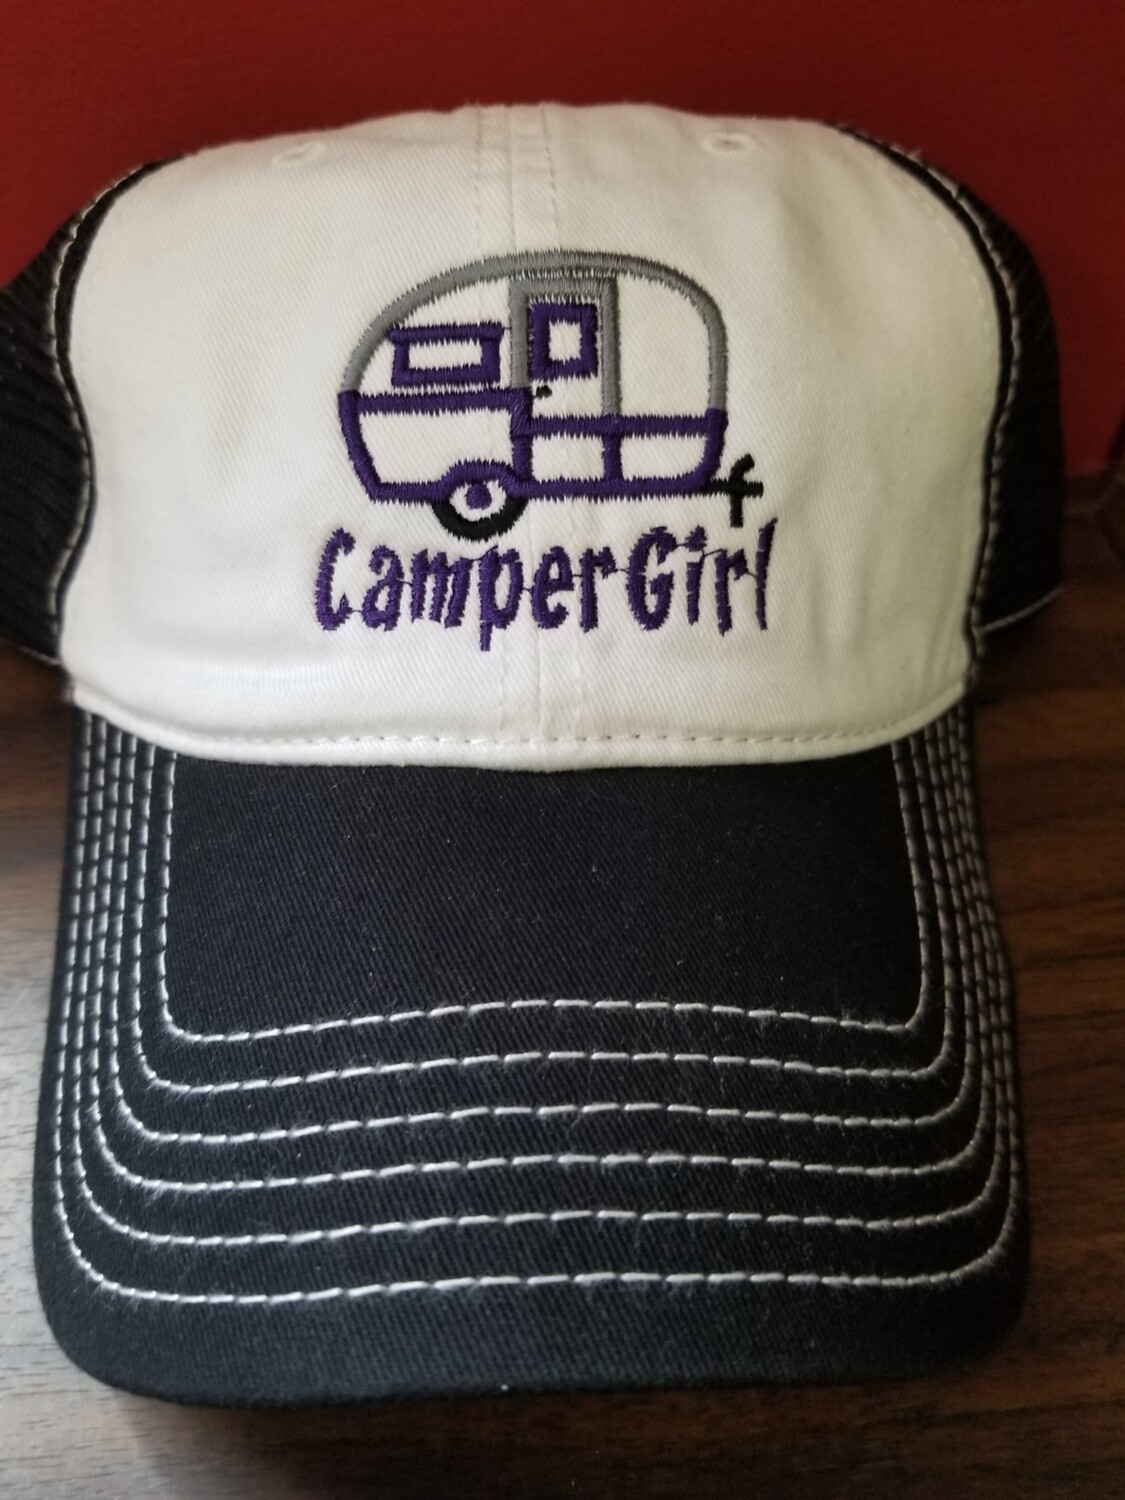 Camper Girl Mesh Adjustable Hat